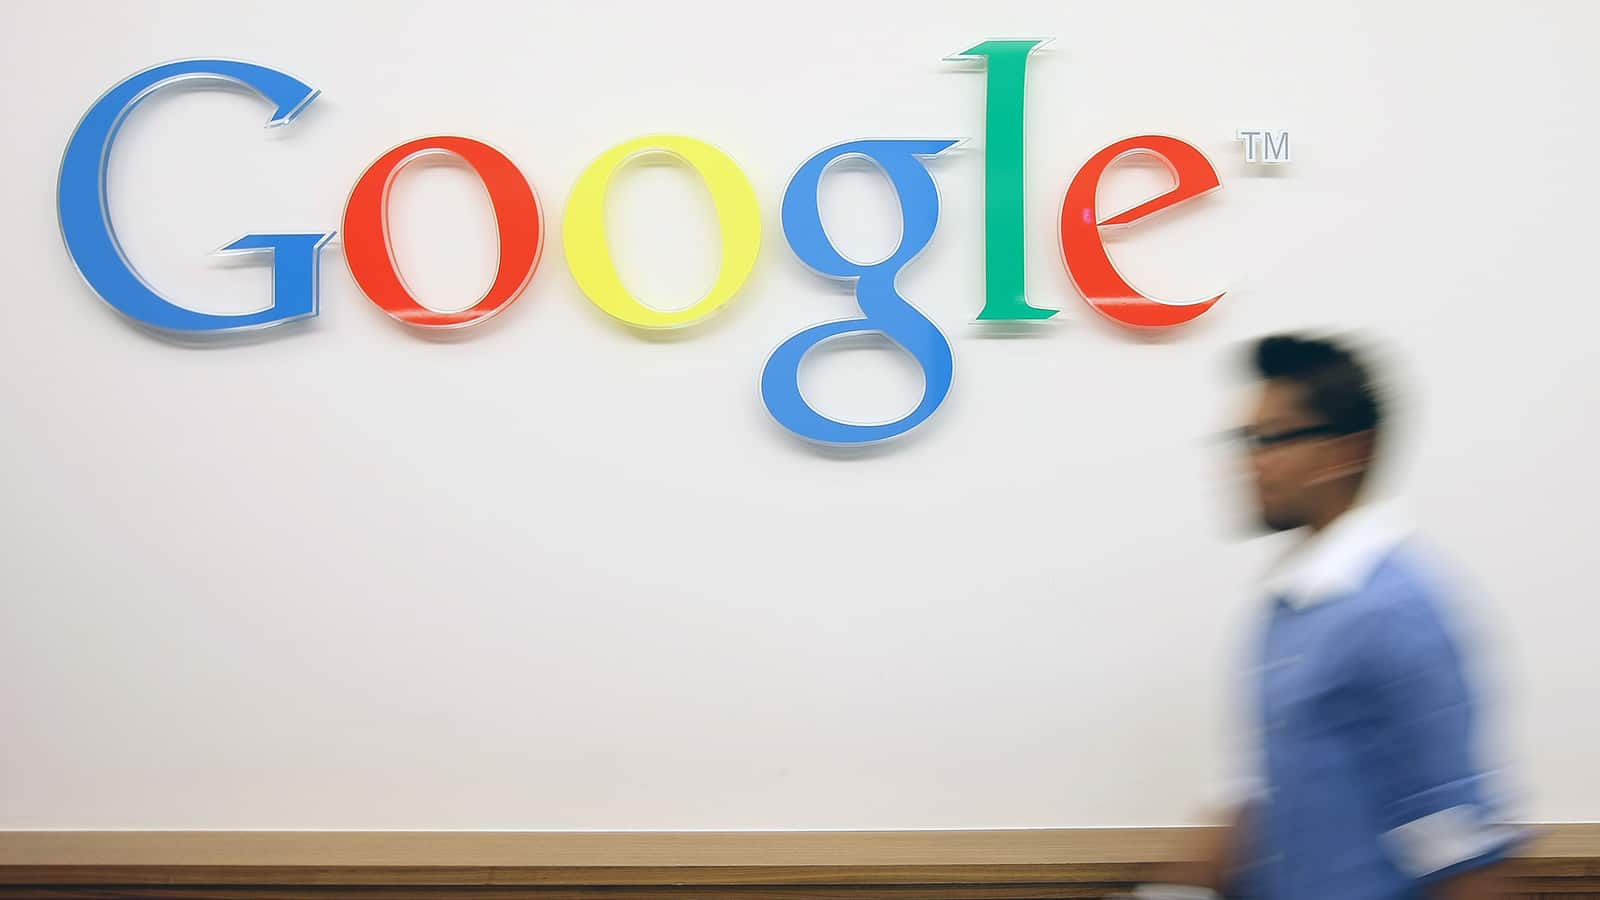 Imagem da palavra Google colorida pintada em uma parede com uma pessoa desfocada passando por ela